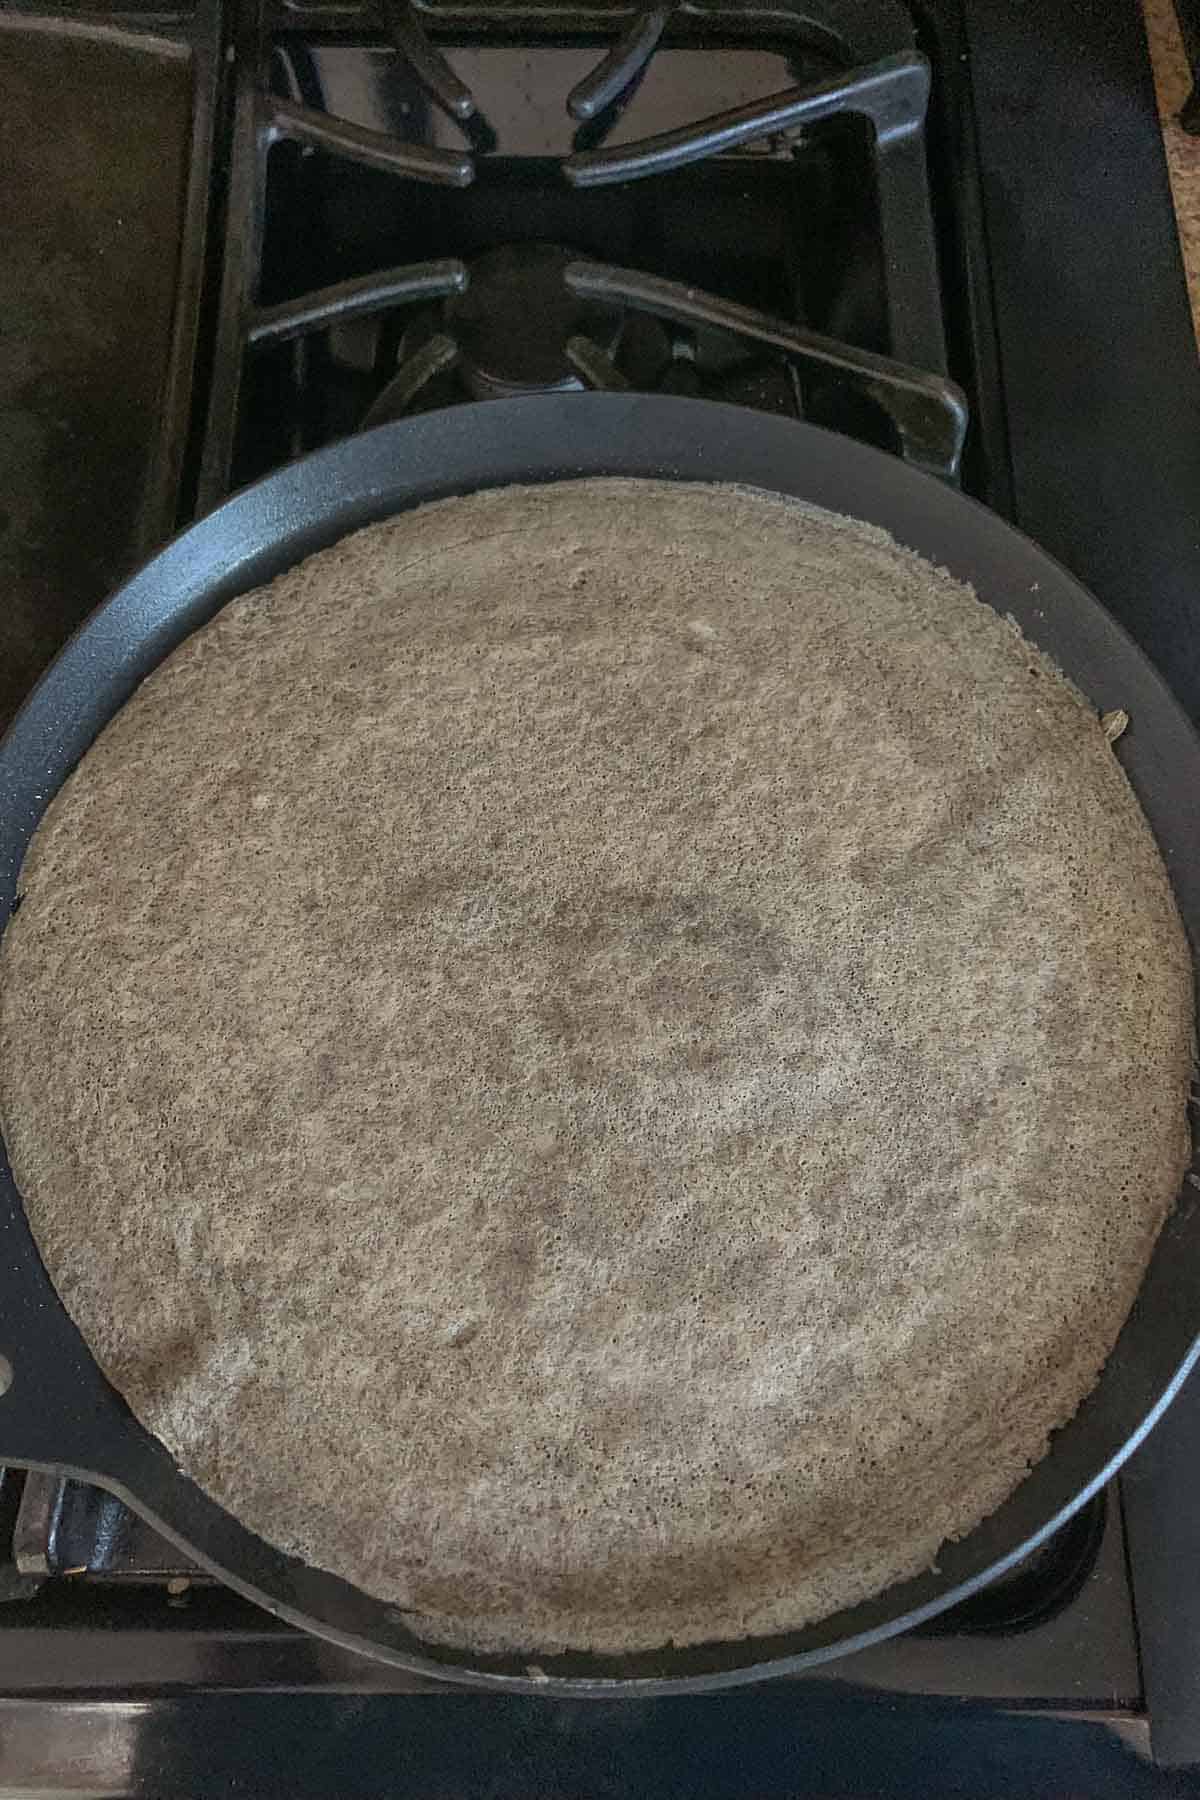 Cooked buckwheat crepe on pan.